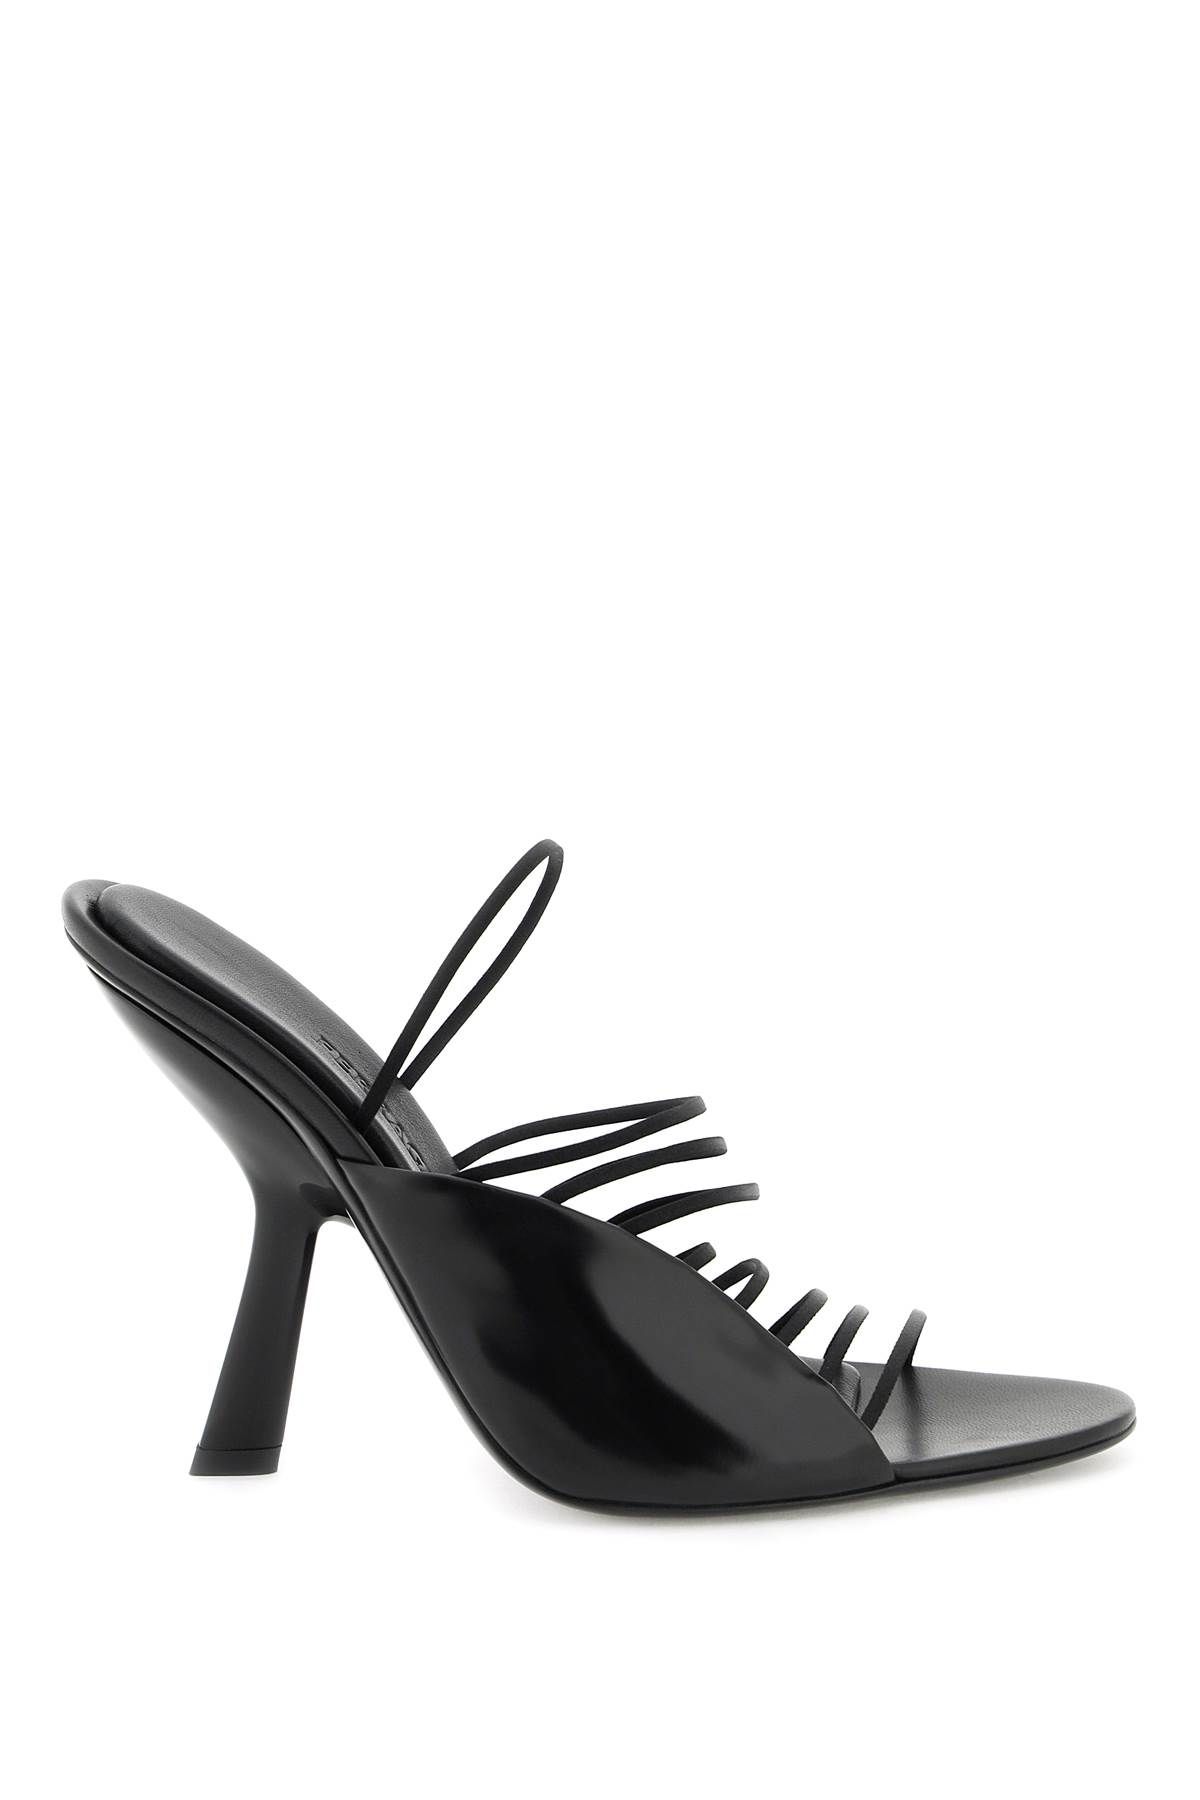 Shop Ferragamo Sandals With Ultra-fine Mini Straps In Black